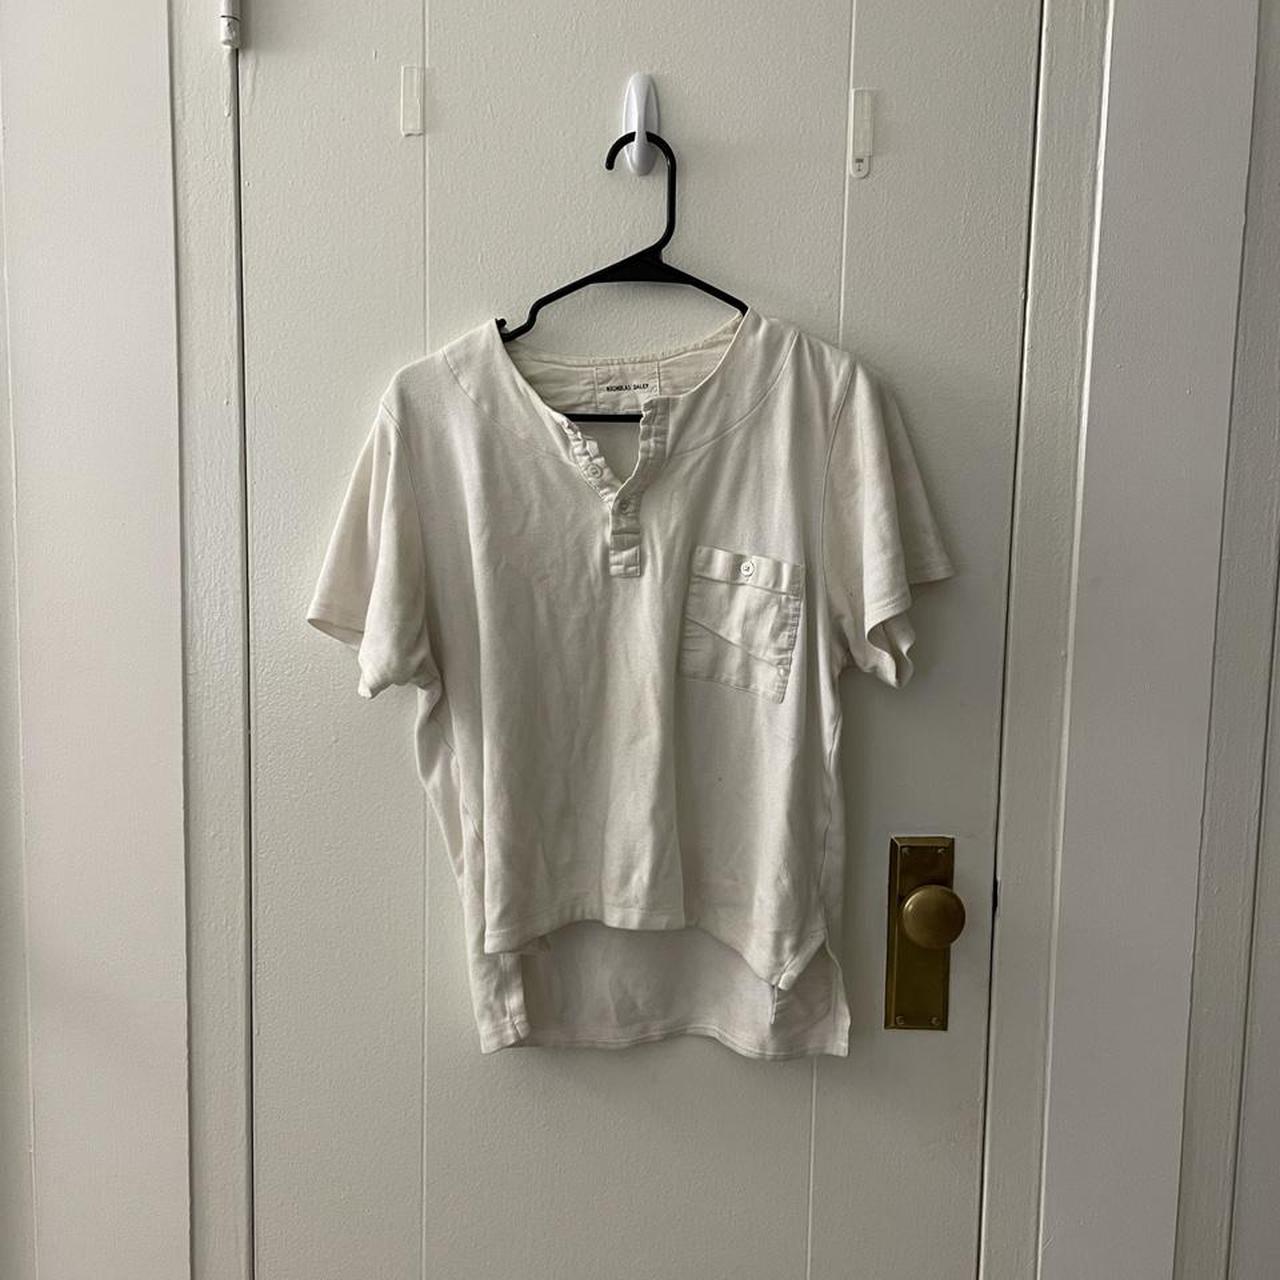 Product Image 1 - Nicholas daley white shirt
Similar to